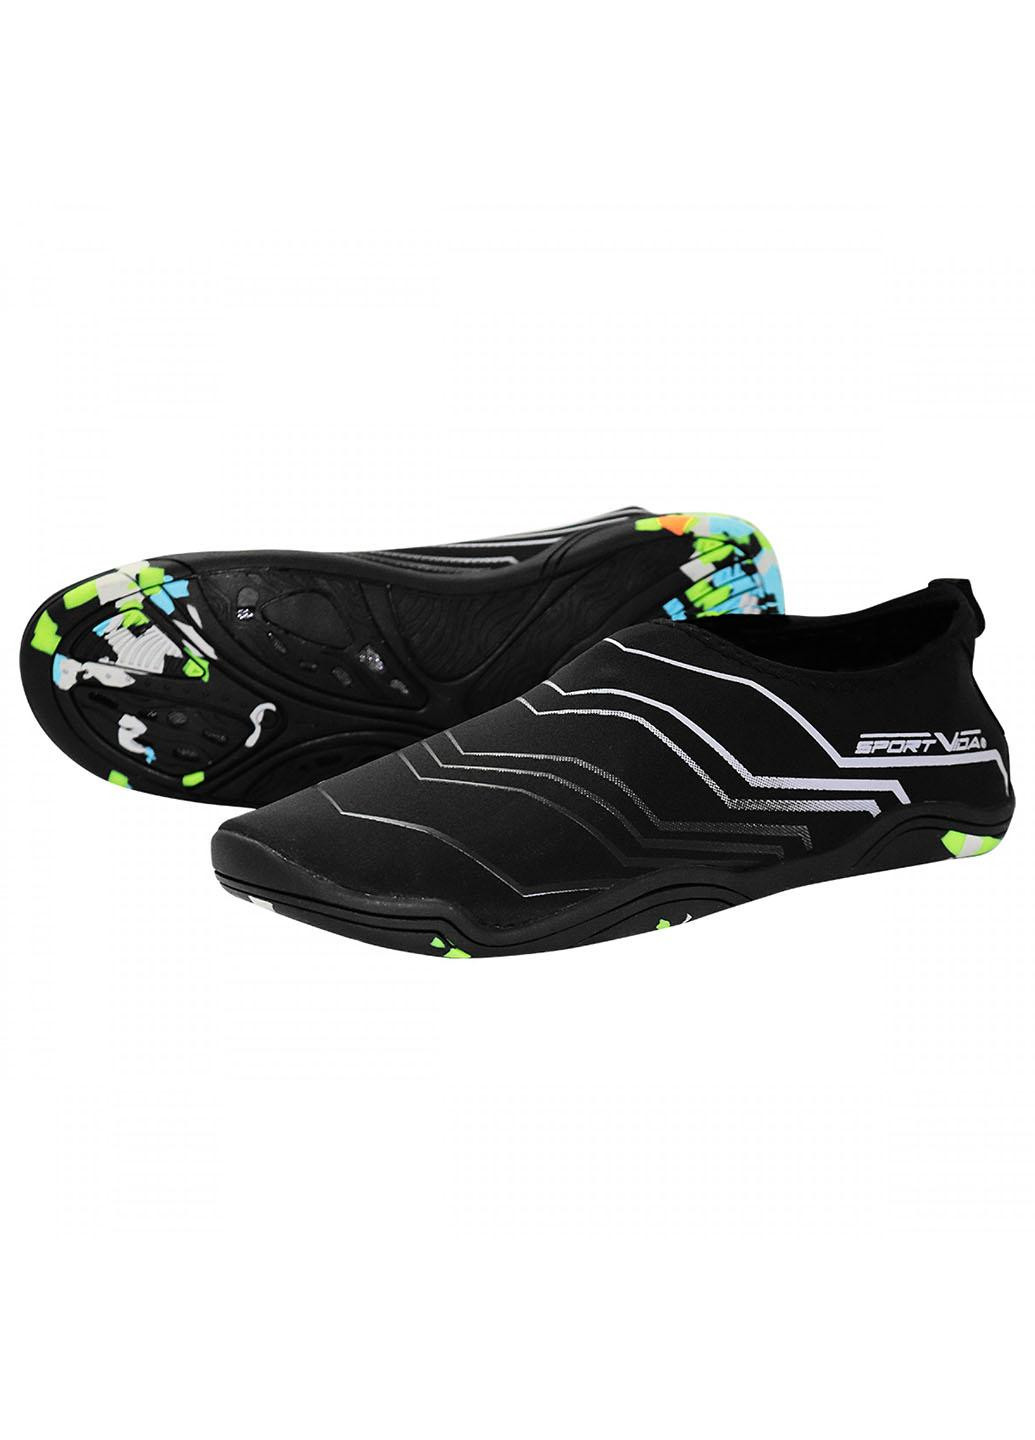 Взуття для пляжу і коралів (аквашузи) SV-GY0006-R45 Size 45 Black/Grey SportVida (258486781)